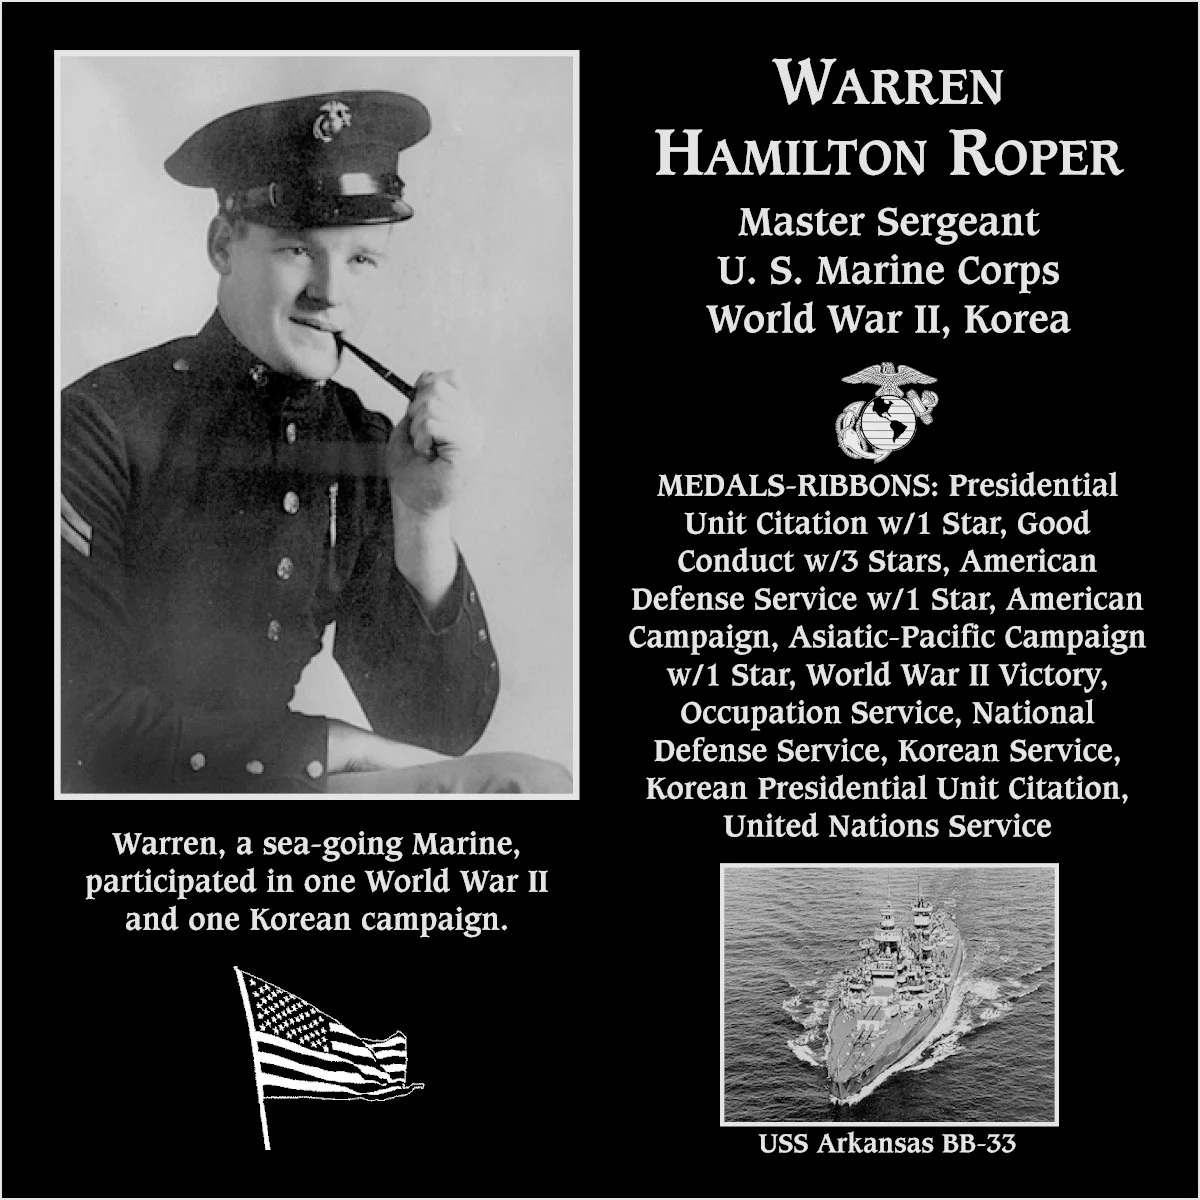 Warren Hamilton Roper